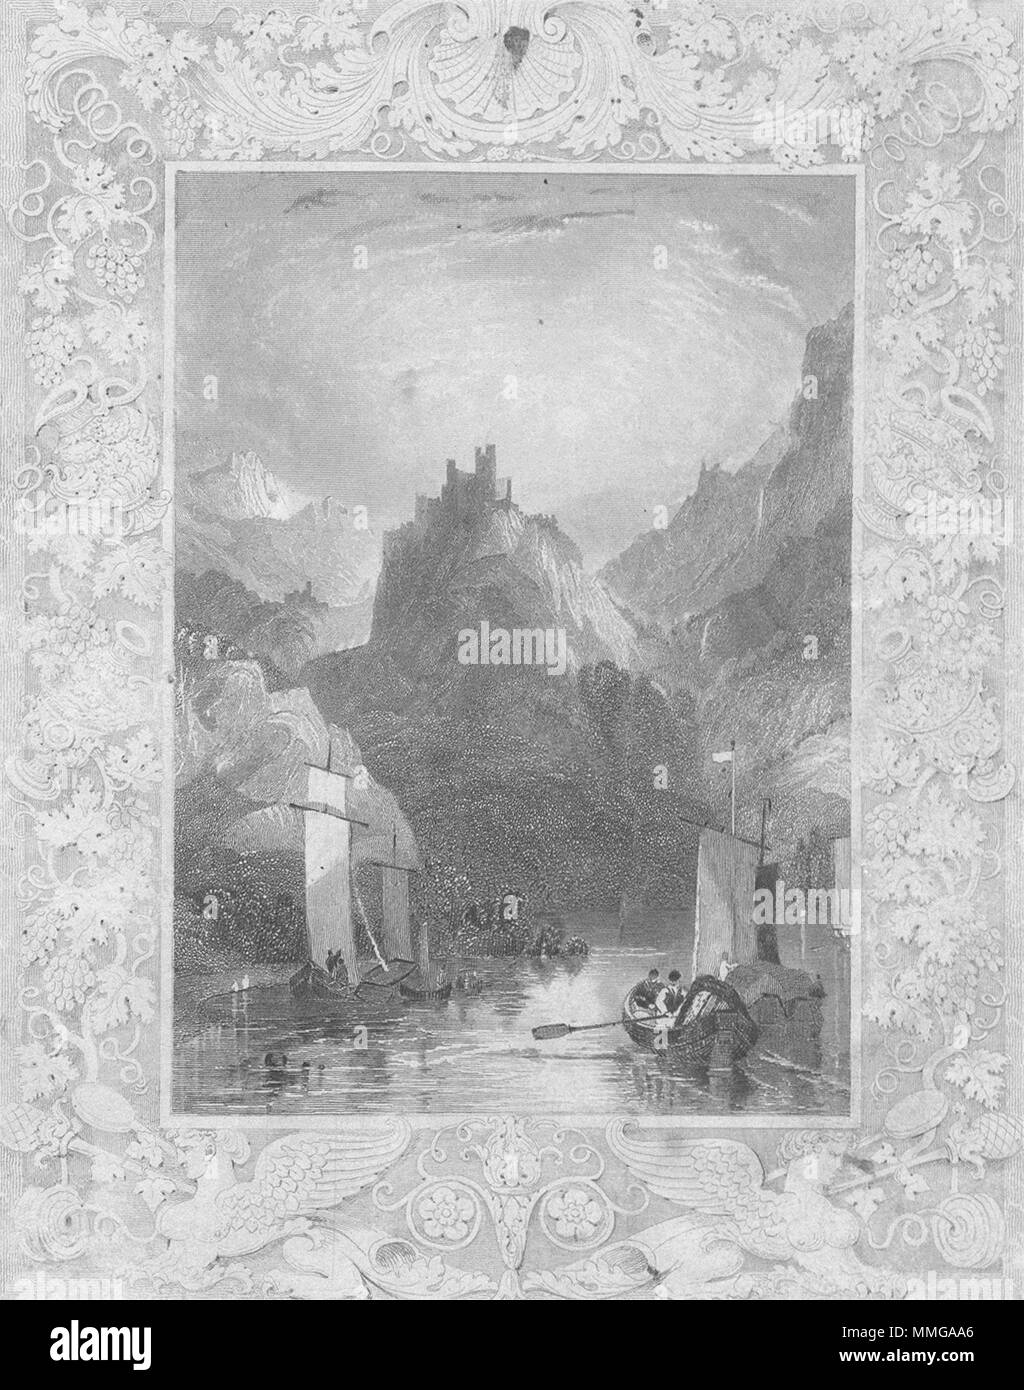 Alemania. Tombleson Ober Rhein 1830 vintage antigua imagen de impresión Foto de stock